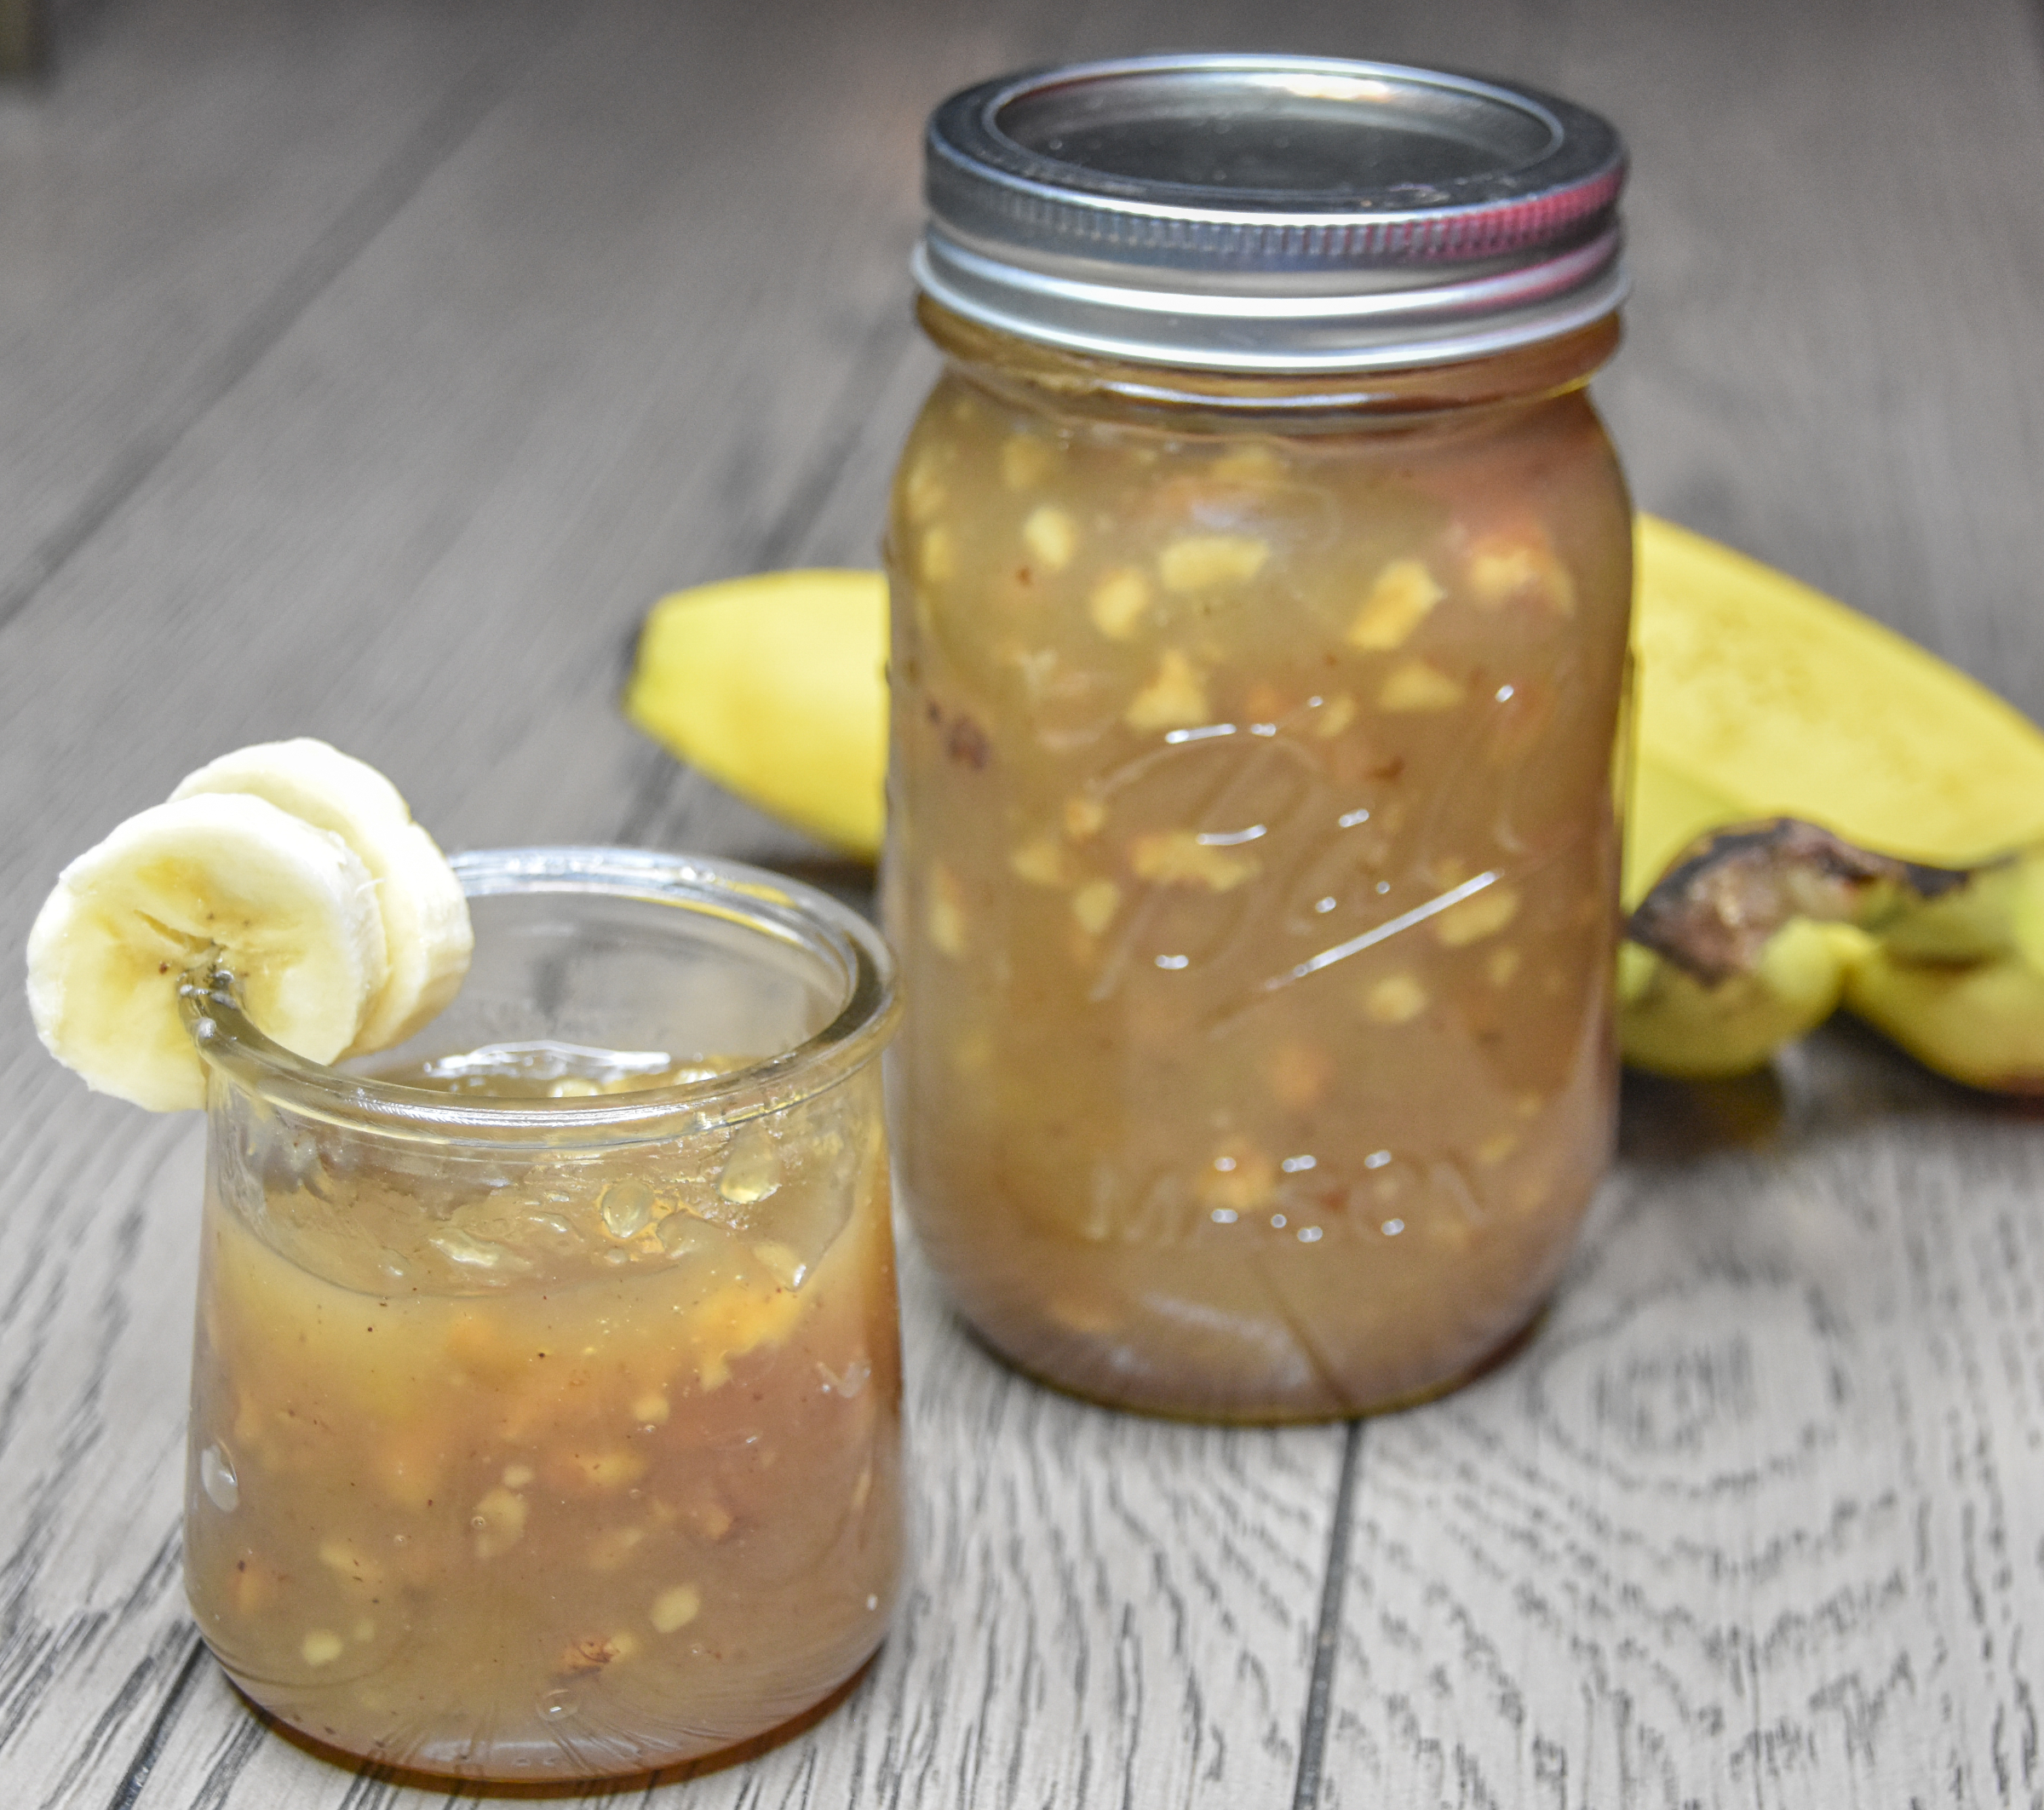 banana nut jam canning